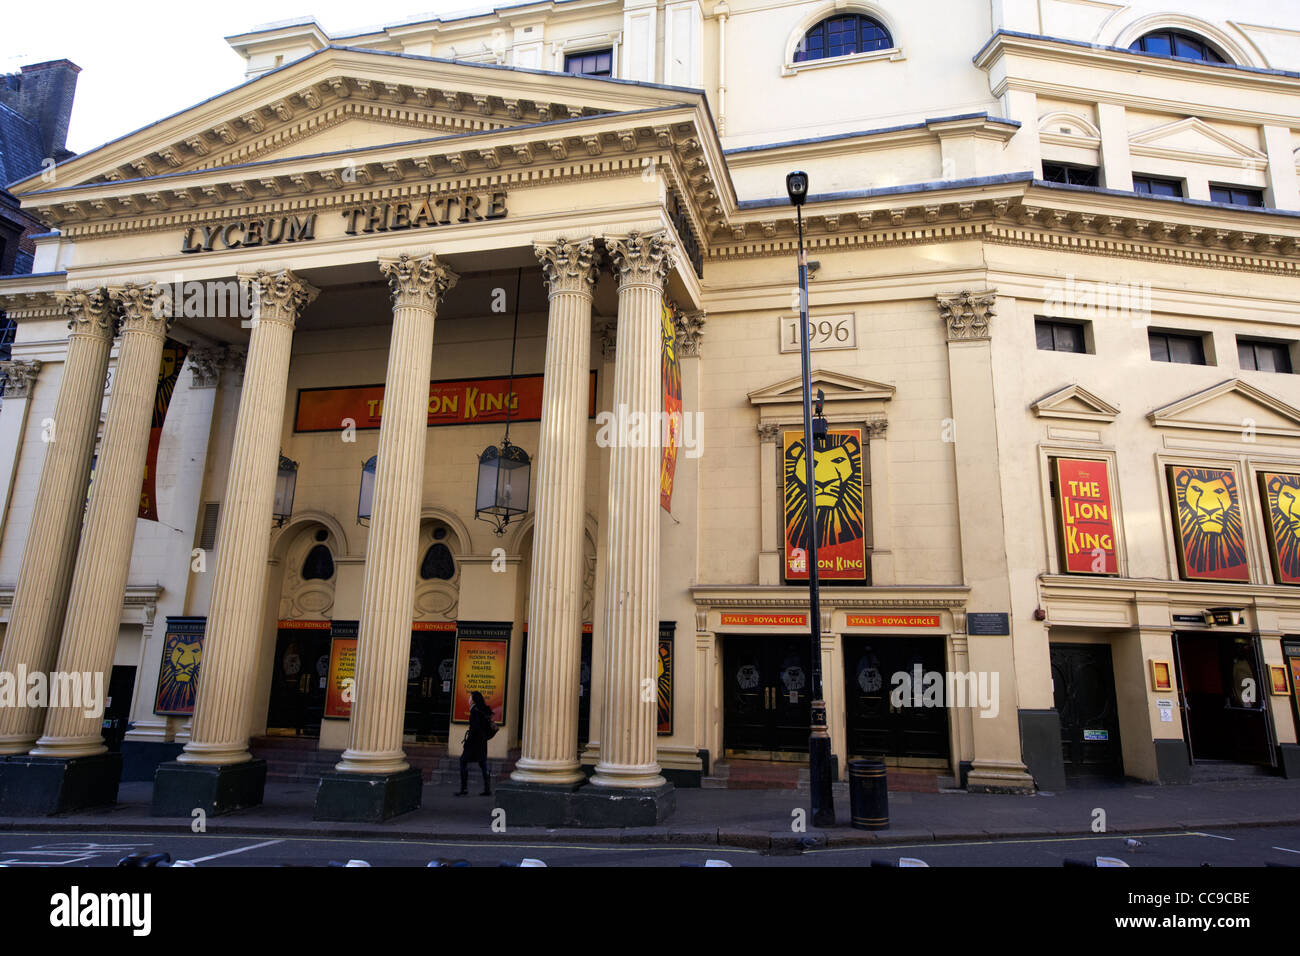 Lyceum Theatre zeigt der Lions king London England UK-Vereinigtes Königreich Stockfoto